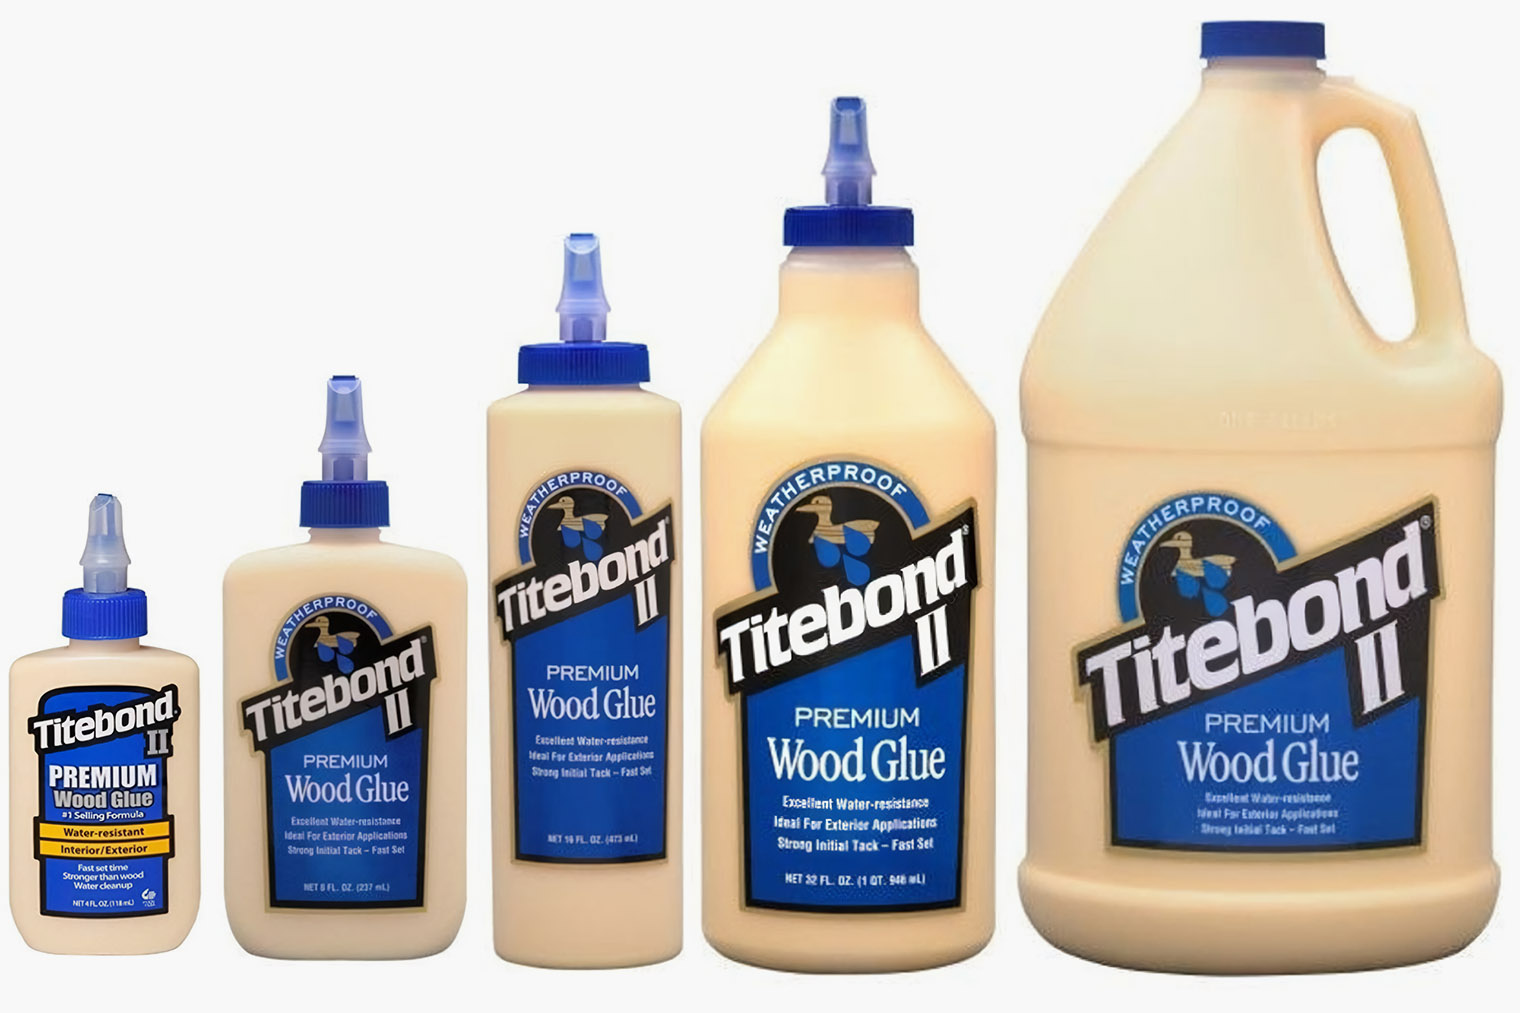 Купить клей тайтбонд. Titebond II Premium Wood Glue. Клей столярный влагостойкий Premium II Wood Glue. Titebond Premium Wood Glue. Клей Titebond II Premium столярный влагостойкий 946мл.